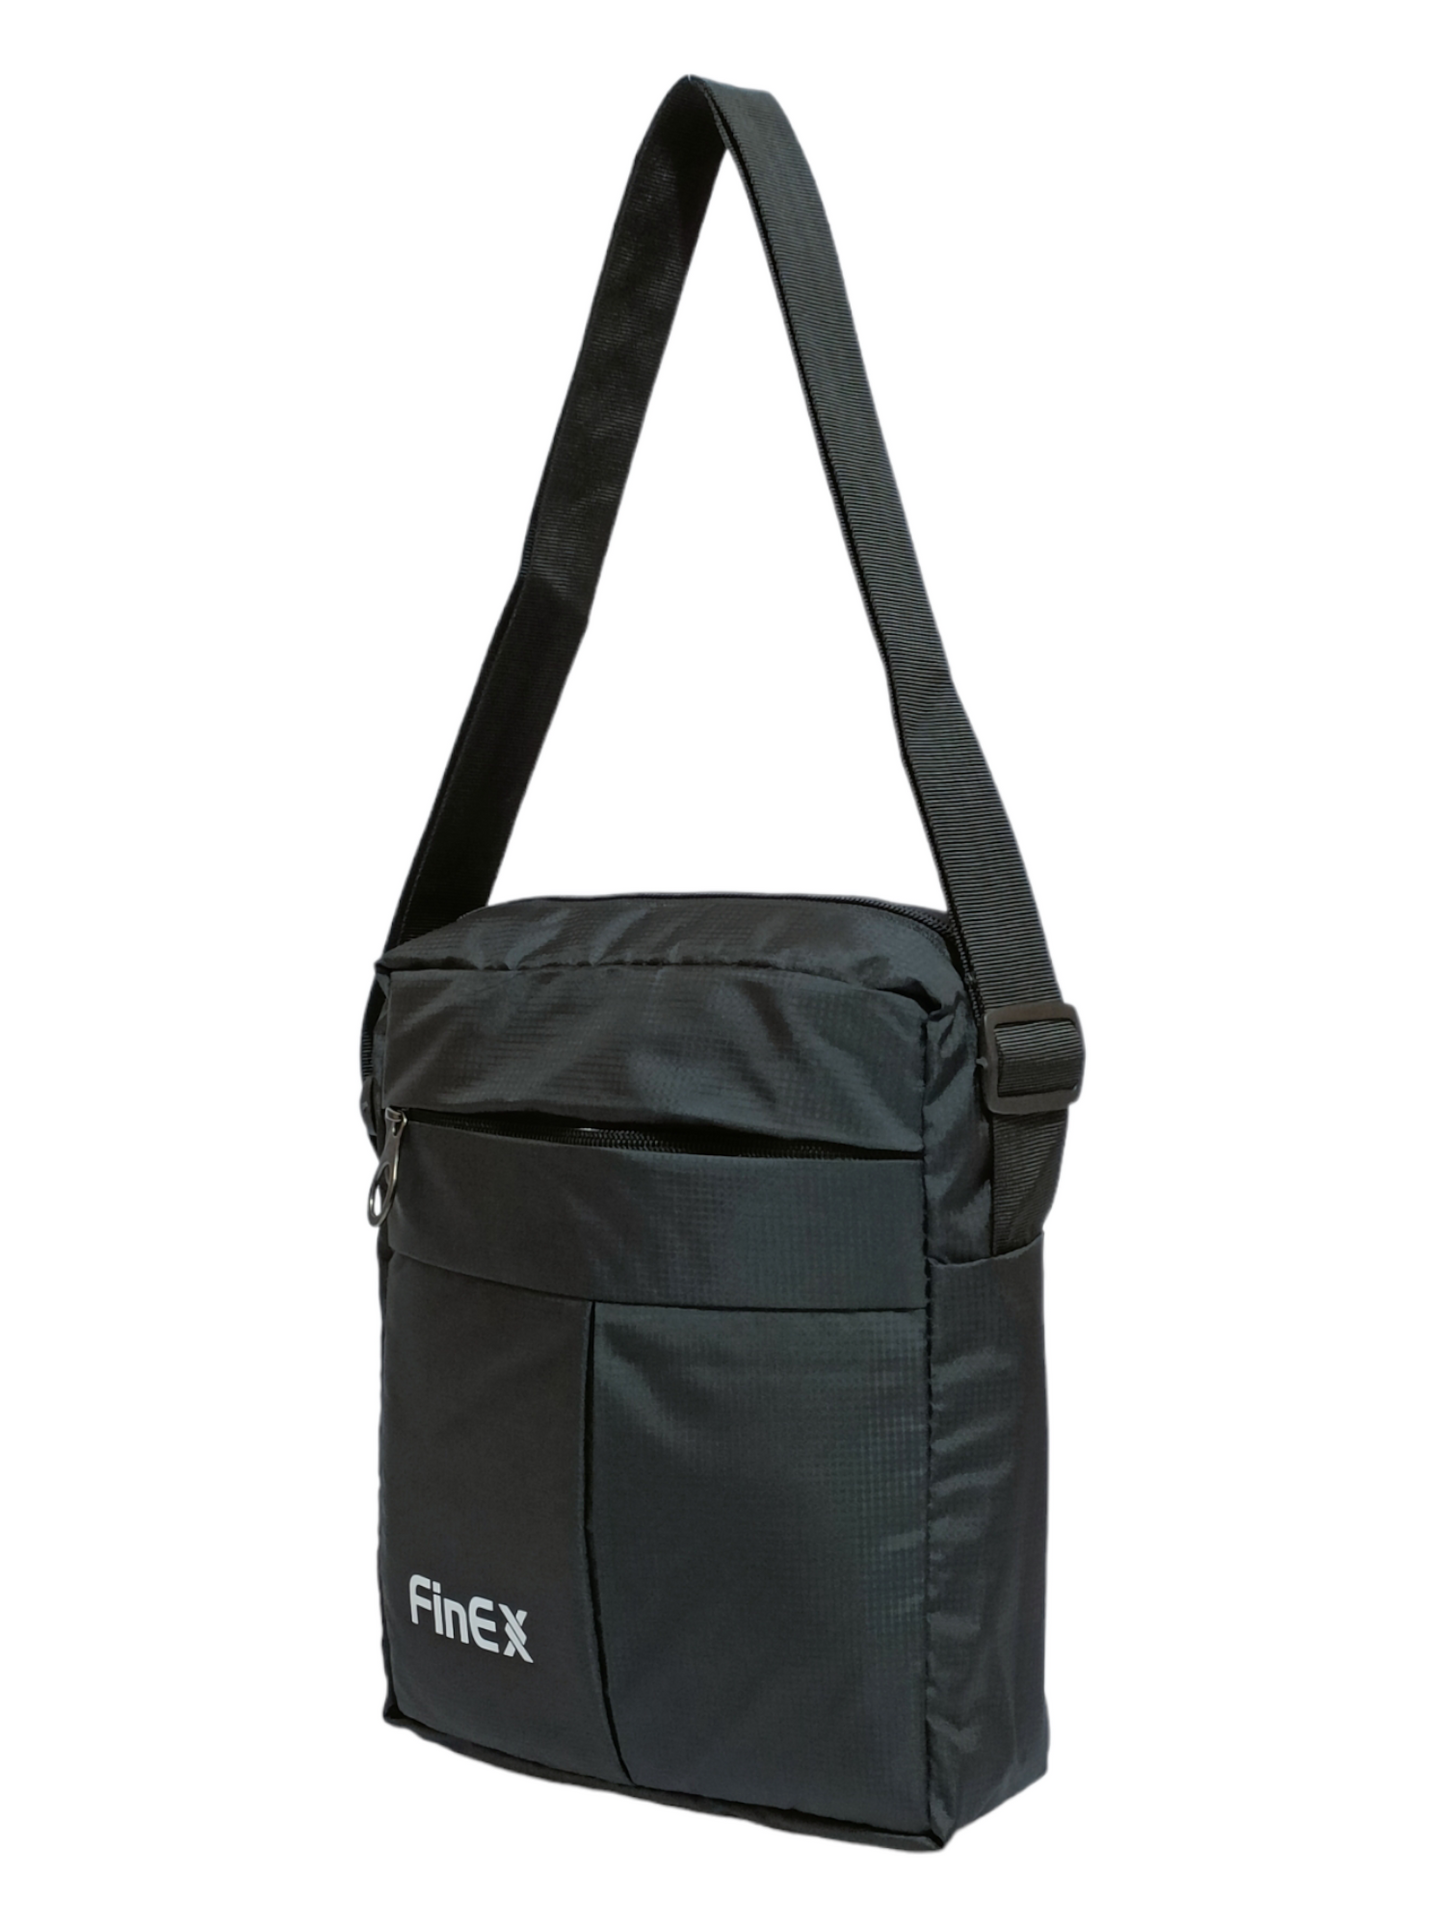 Medium size Unisex side bag